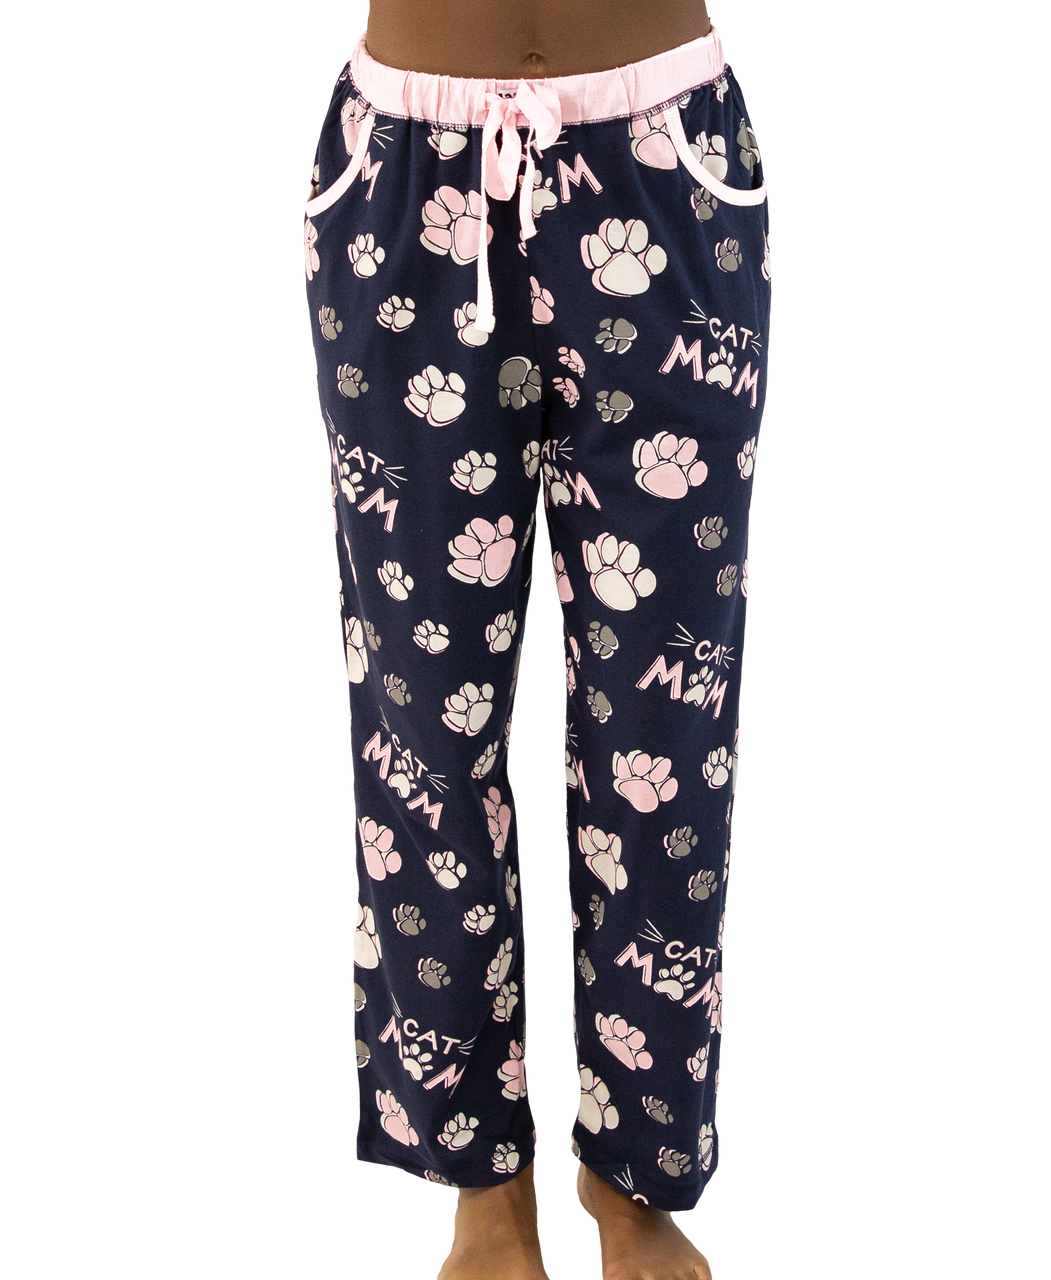 Allegra K Women Winter Flannel Pajama Sets Cute Printed Long Sleeve  Nightwear Top And Pants Loungewear Soft Sleepwear Strawberry Printed Pink  Xx Large : Target